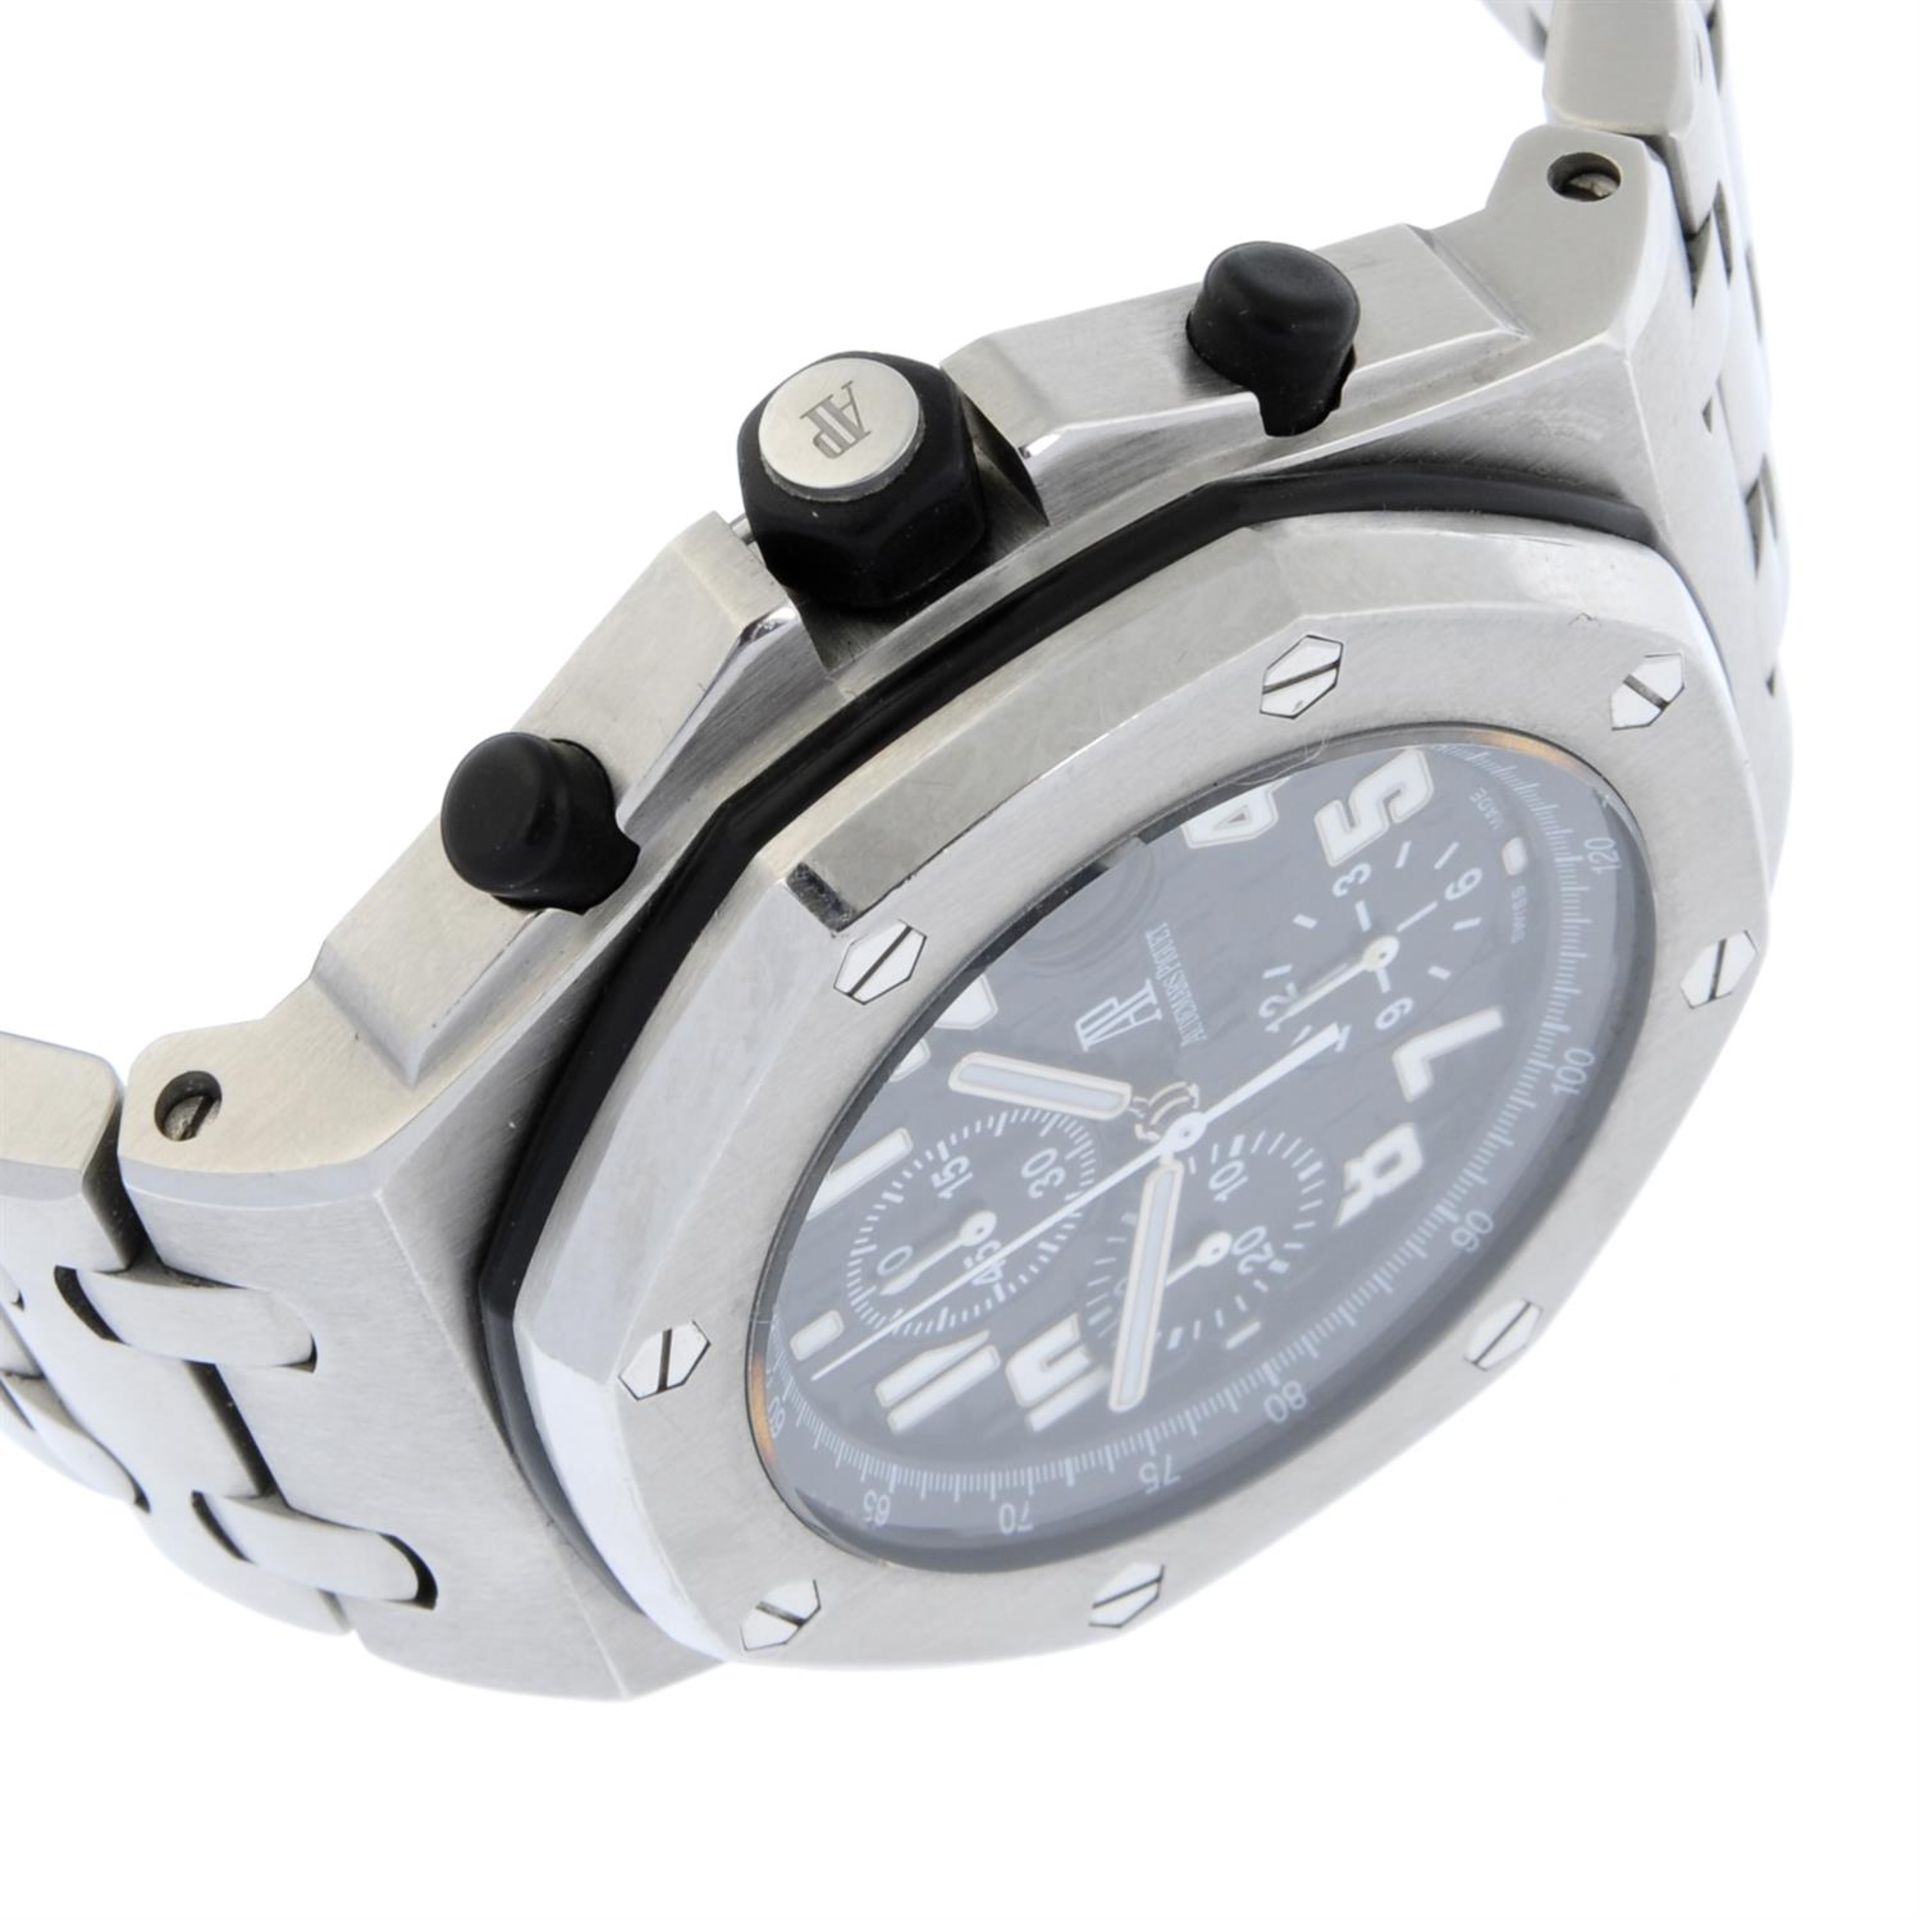 AUDEMARS PIGUET - stainless steel Royal Oak Offshore bracelet watch, 45mm. - Bild 3 aus 7